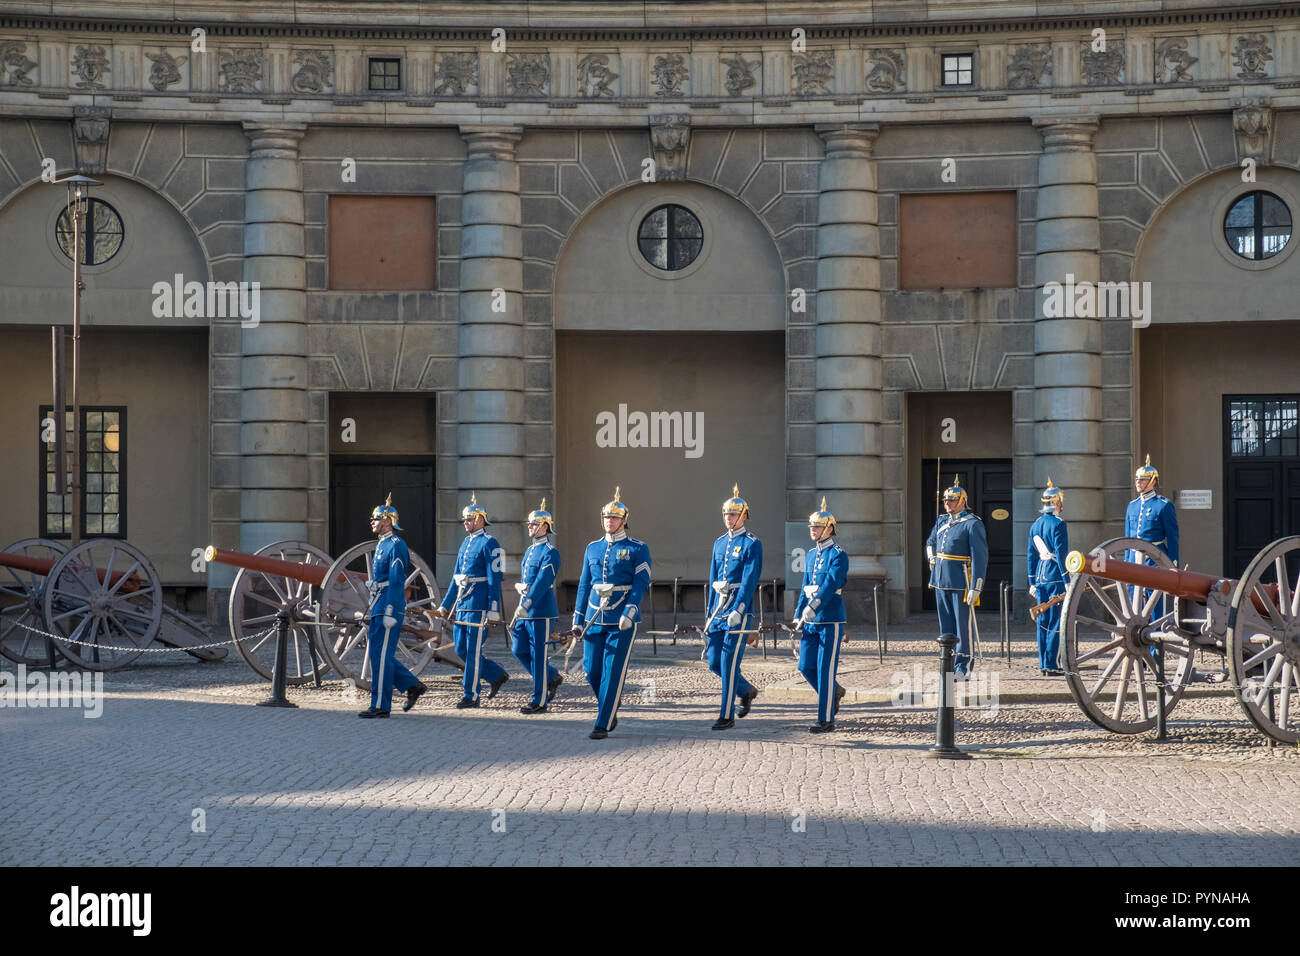 Le protezioni in uniforme cerimoniale eseguire la cerimonia del cambio della guardia, Royal Palace, la Gamla Stan, Stoccolma, Svezia. Foto Stock